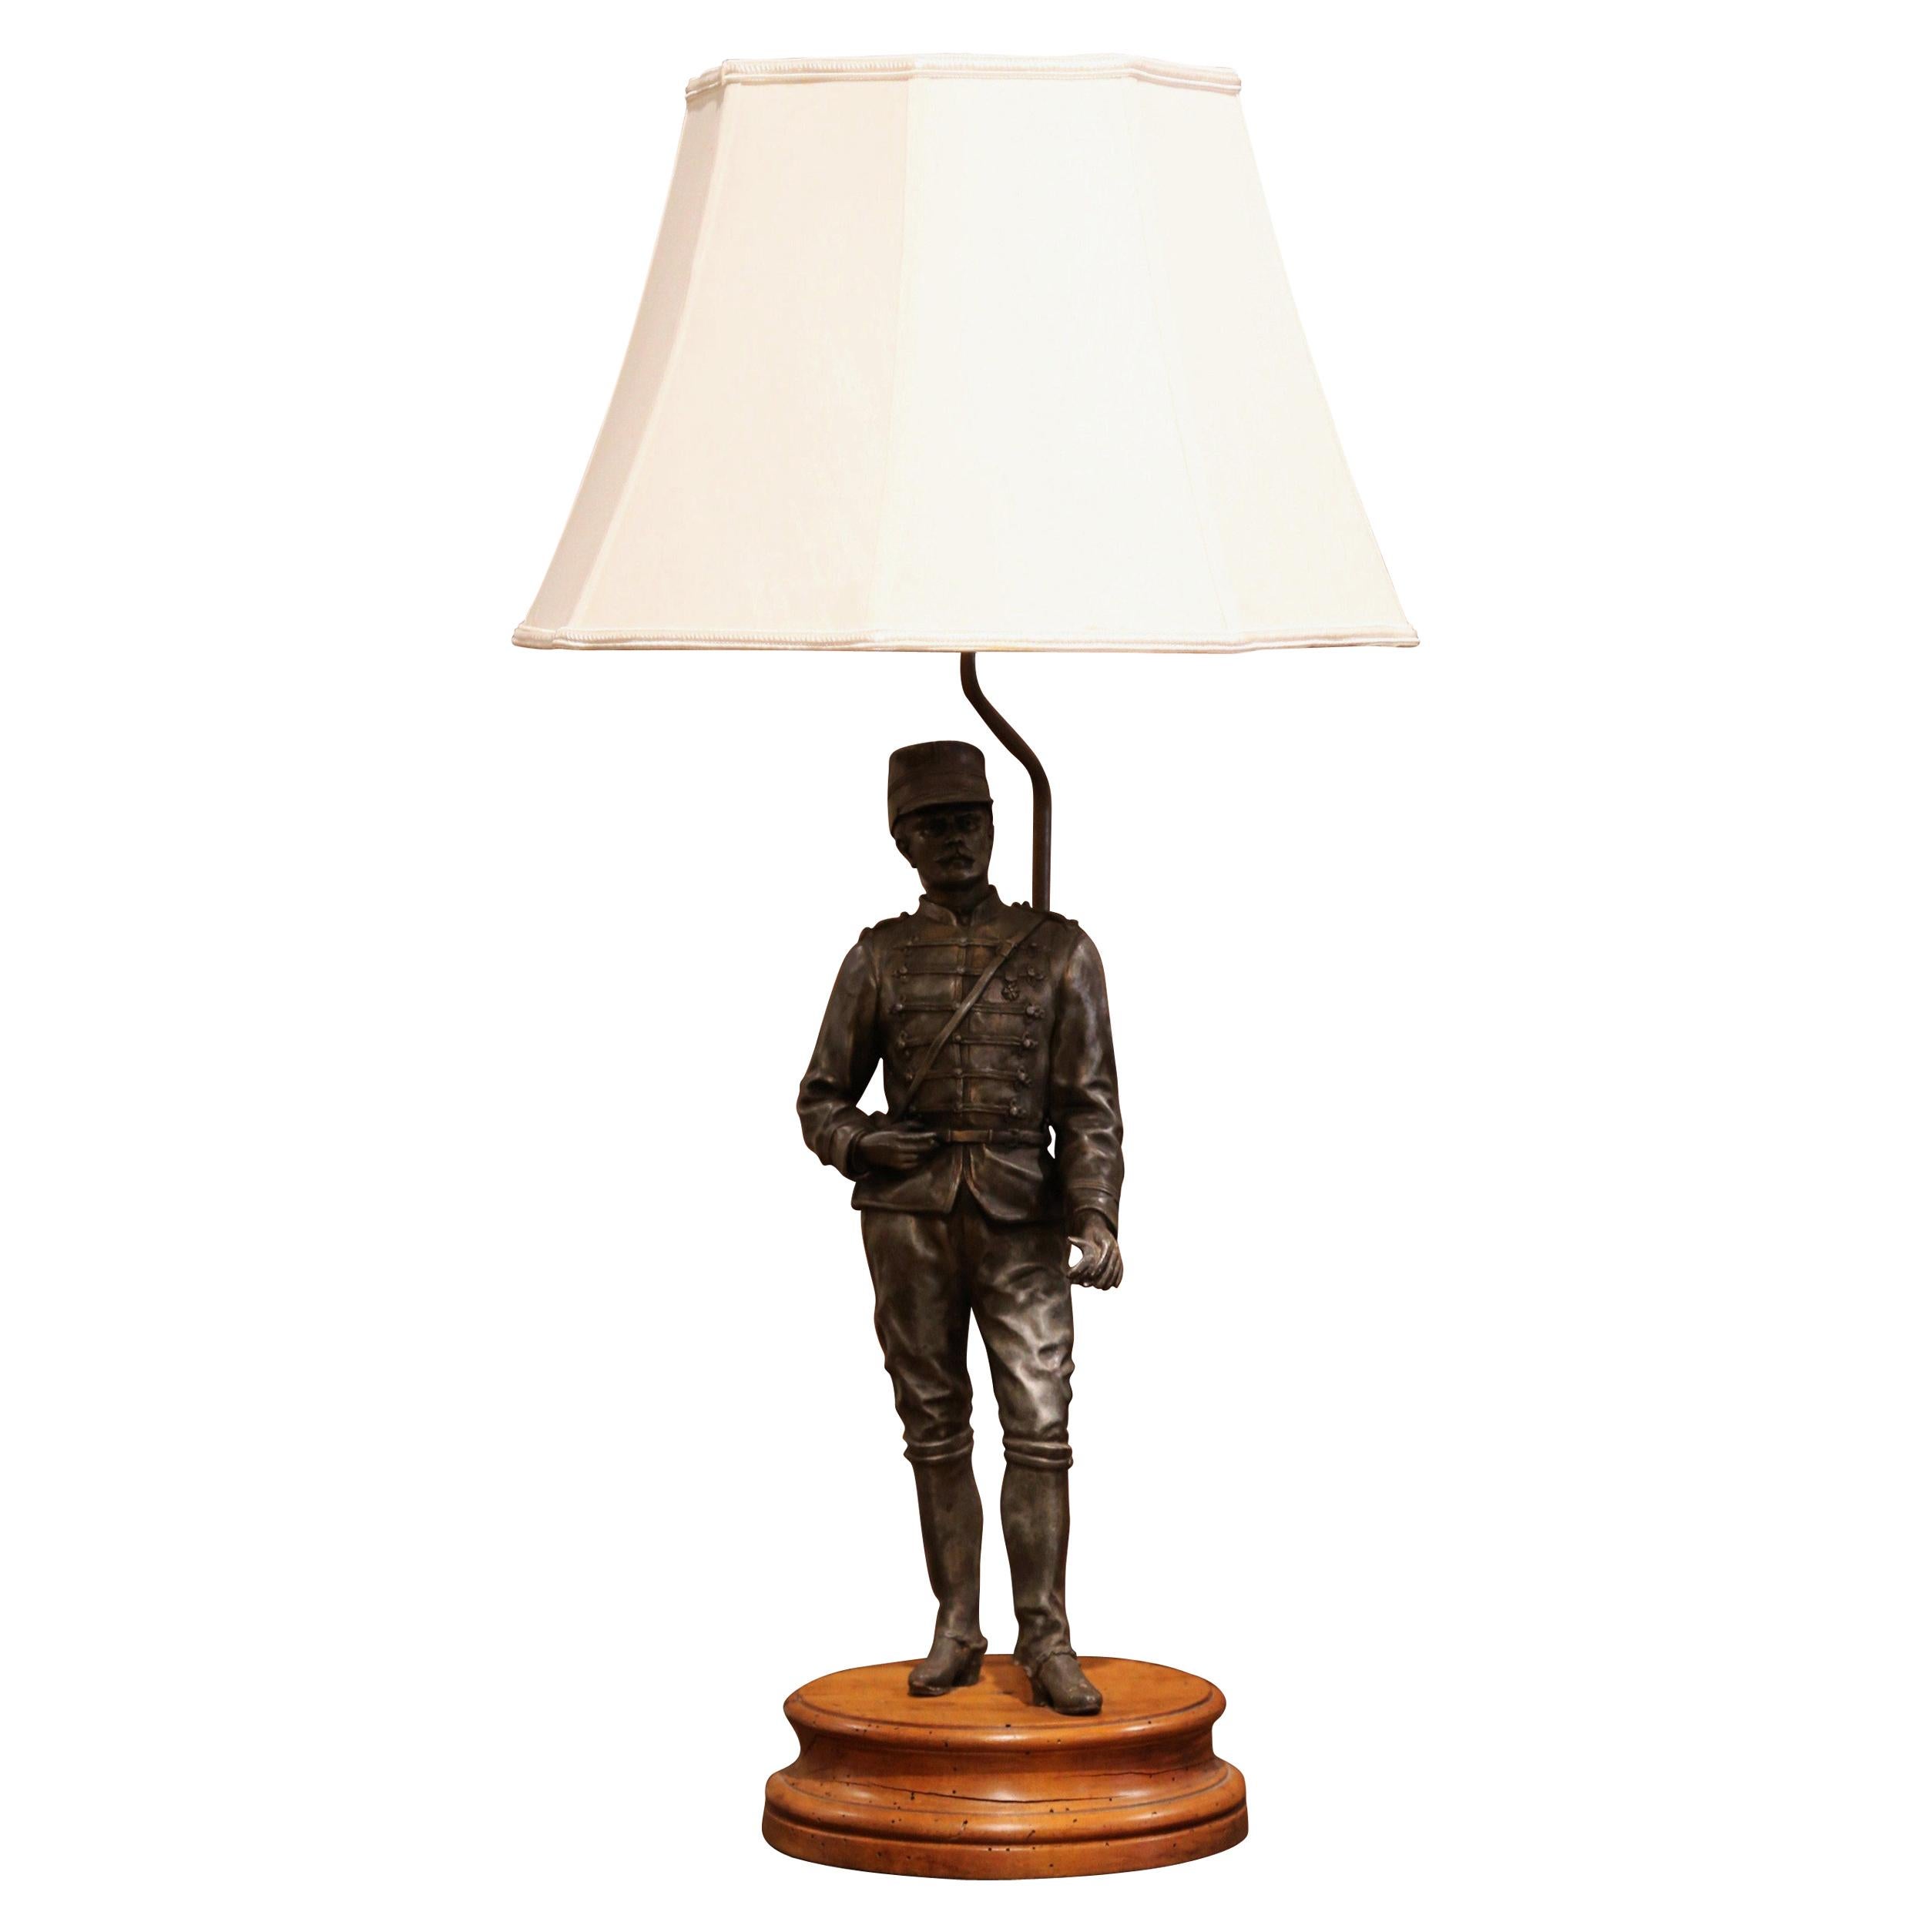 Décorez le bureau d'un homme avec cette lampe de table masculine antique, fabriquée en France vers 1880 et reposant sur une base ronde en noyer sculpté, la figurine représente un soldat français en uniforme Napoléon III. La lumière avec une tige